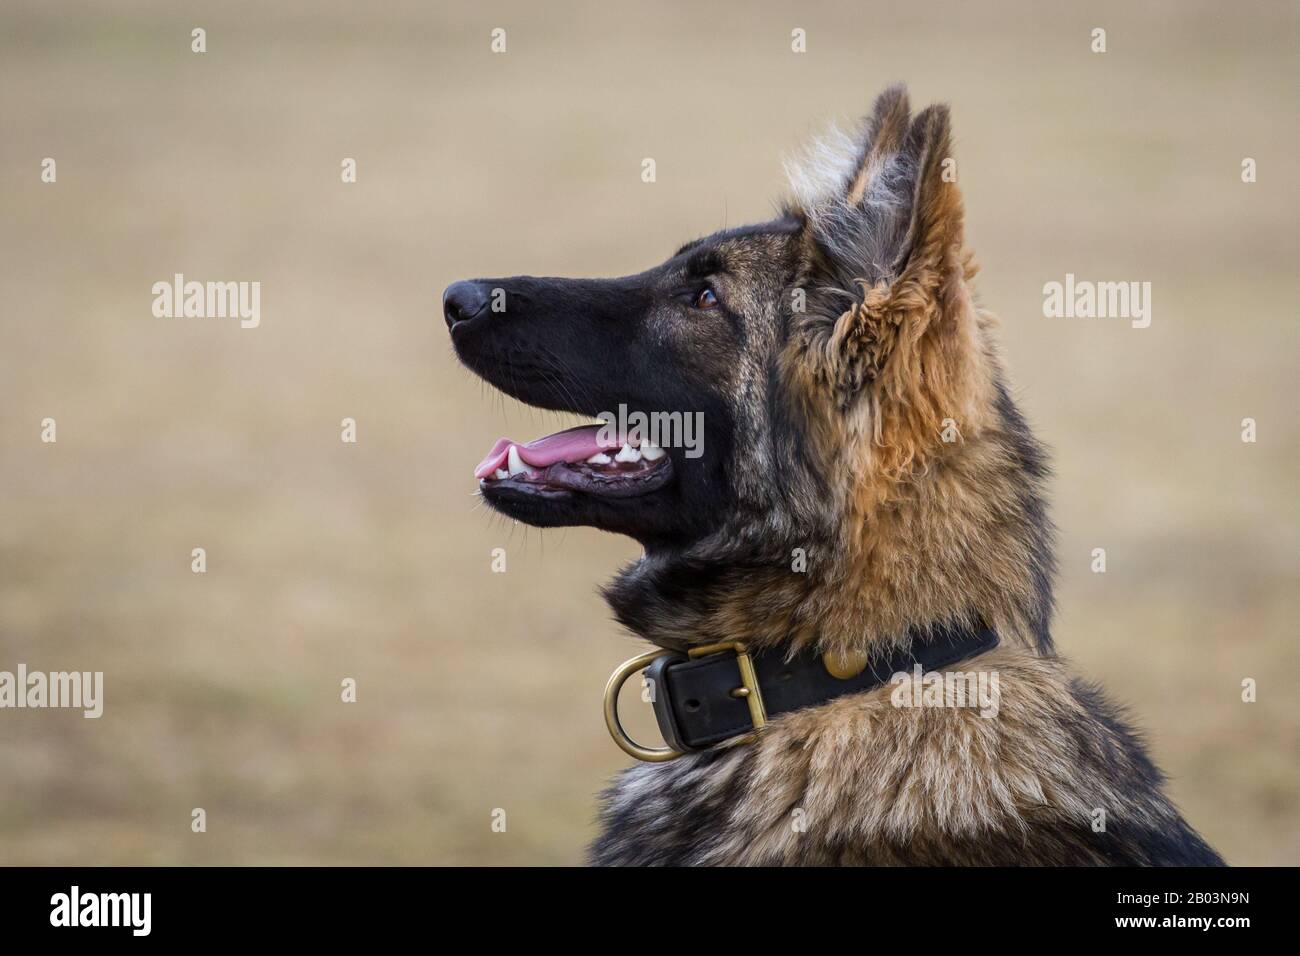 Retrato de un perro pastor alemán de pelo largo (perro alsaciano) que mira centrado al propietario, esperando más órdenes Foto de stock